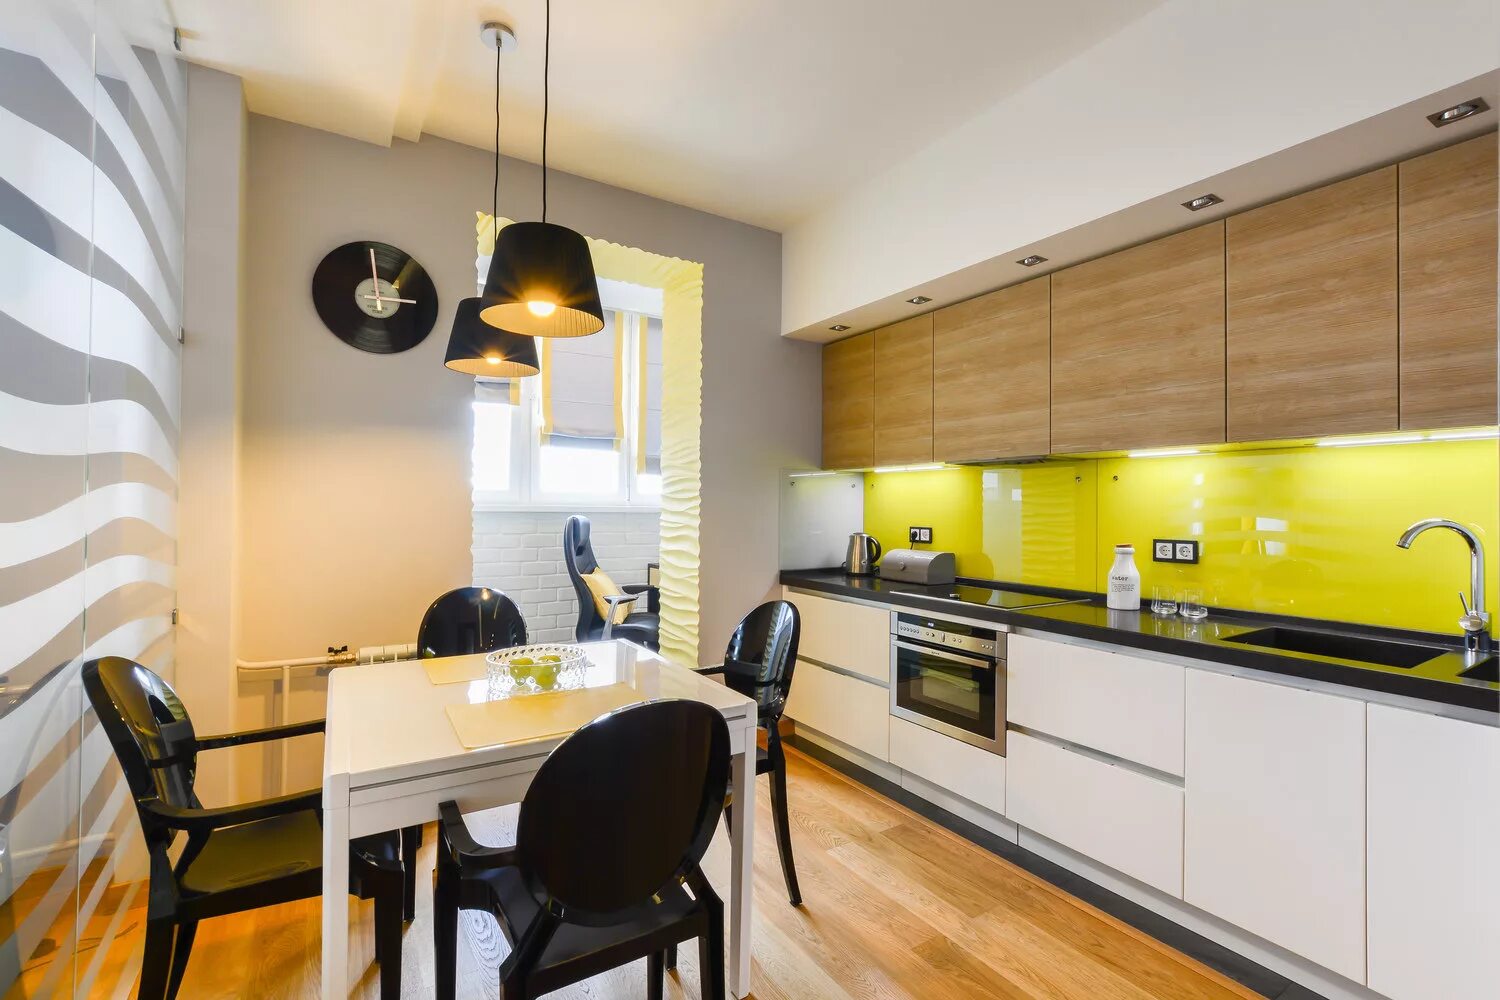 Бело желтая кухня. Интерьер кухни. Кухня в желтом цвете. Современный интерьер кухни. Желтая кухня в интерьере.